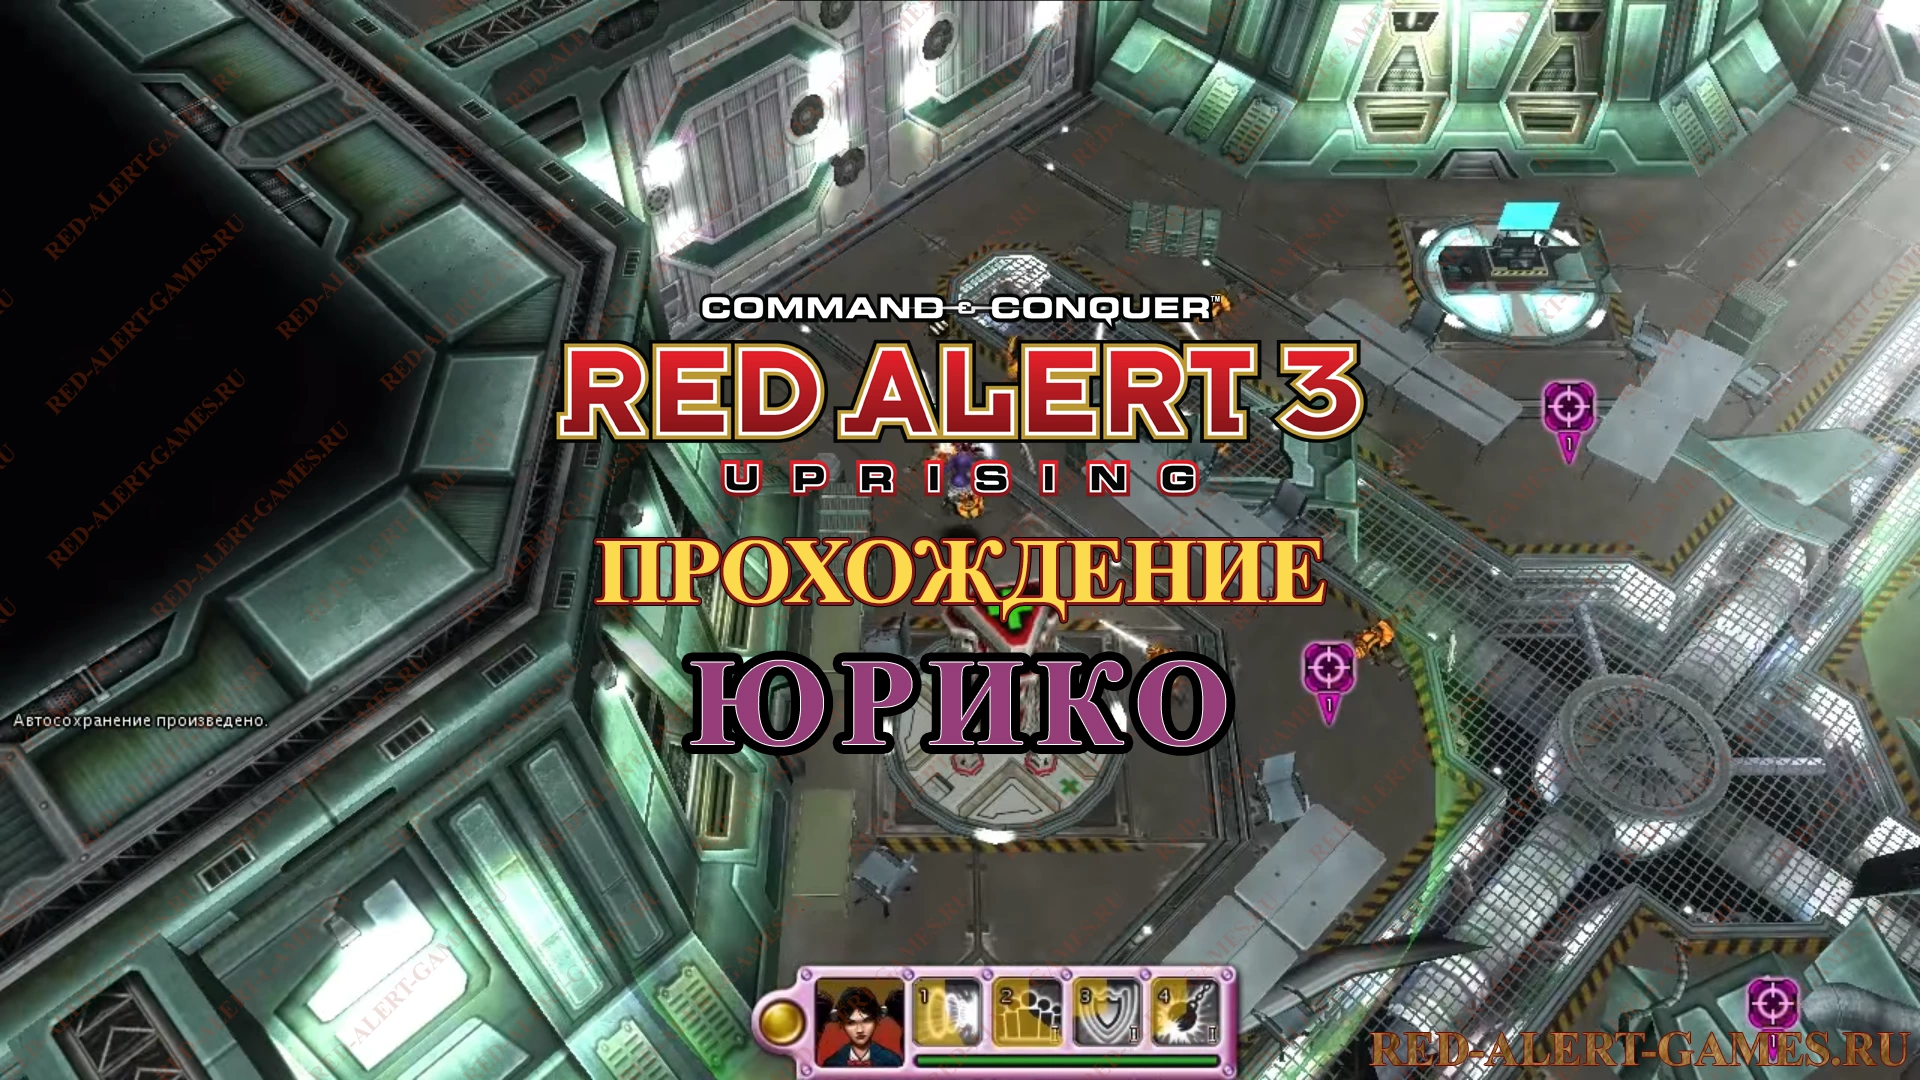 Red Alert 3 Uprising Прохождение Юрико